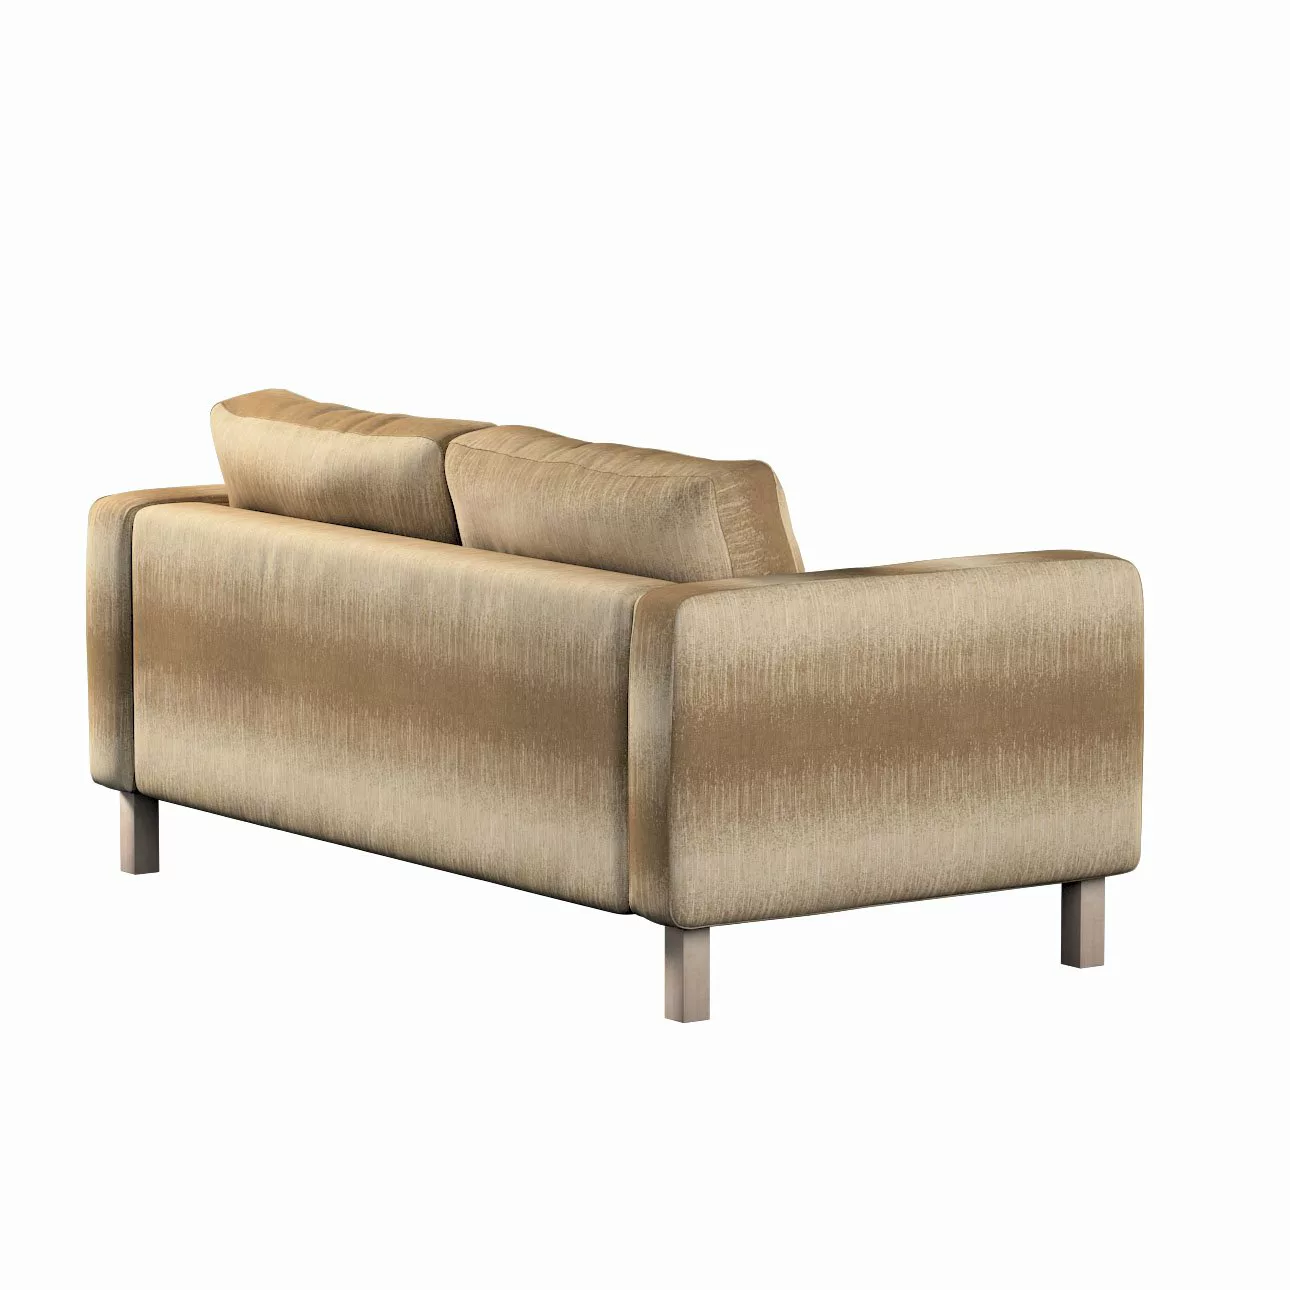 Bezug für Karlstad 2-Sitzer Sofa nicht ausklappbar, creme-beige, Sofahusse, günstig online kaufen